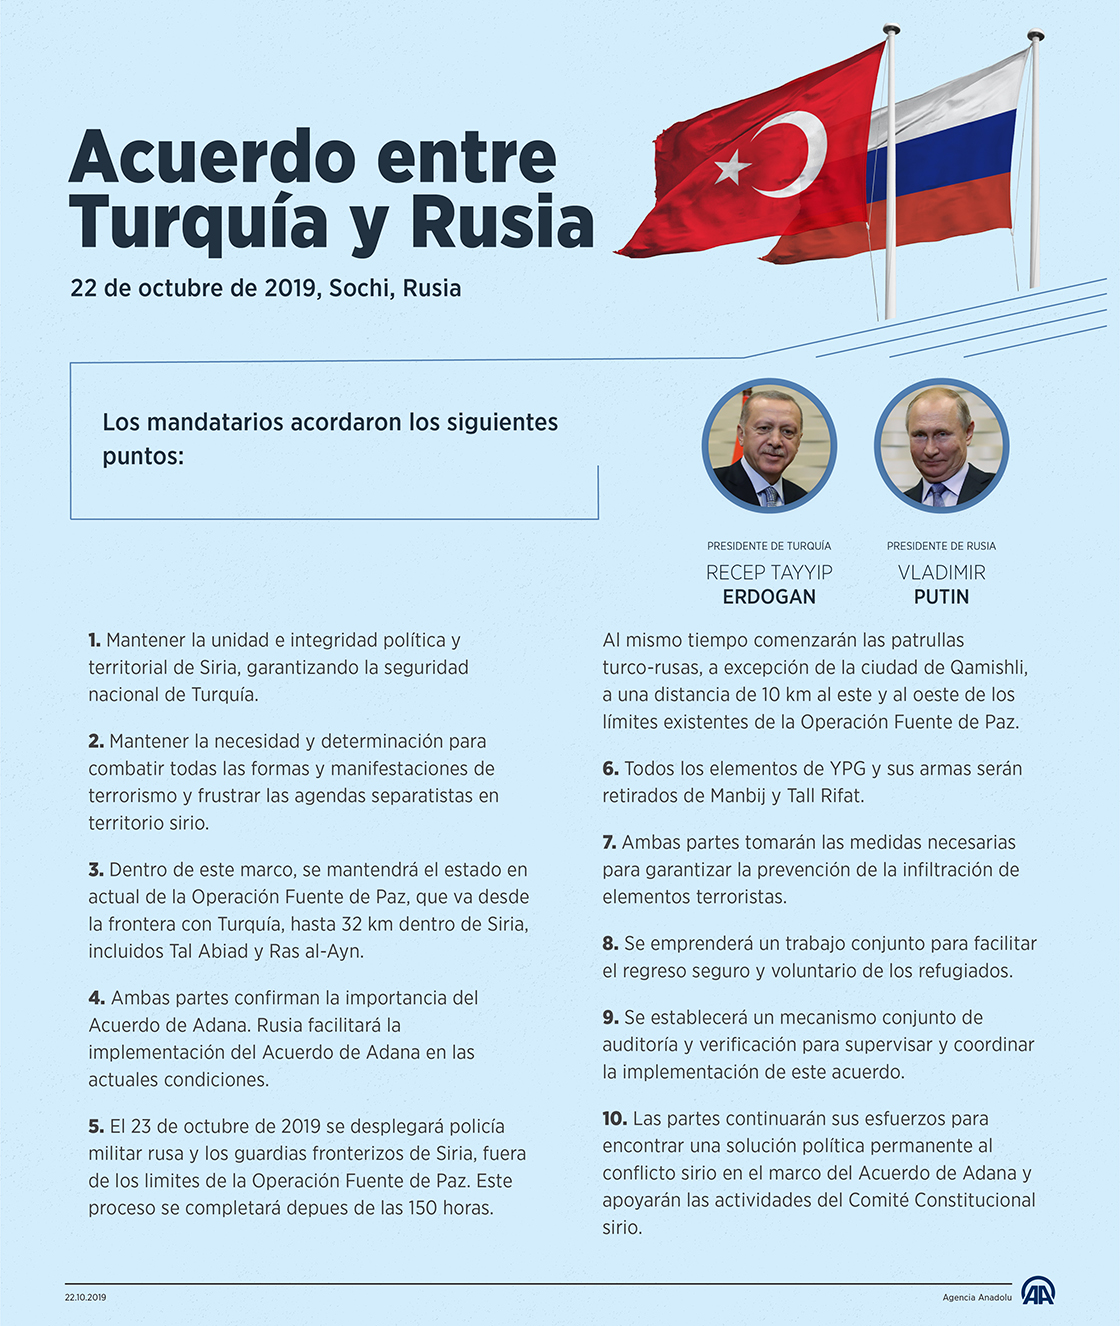 El nuevo acuerdo logrado entre Turquía y Rusia